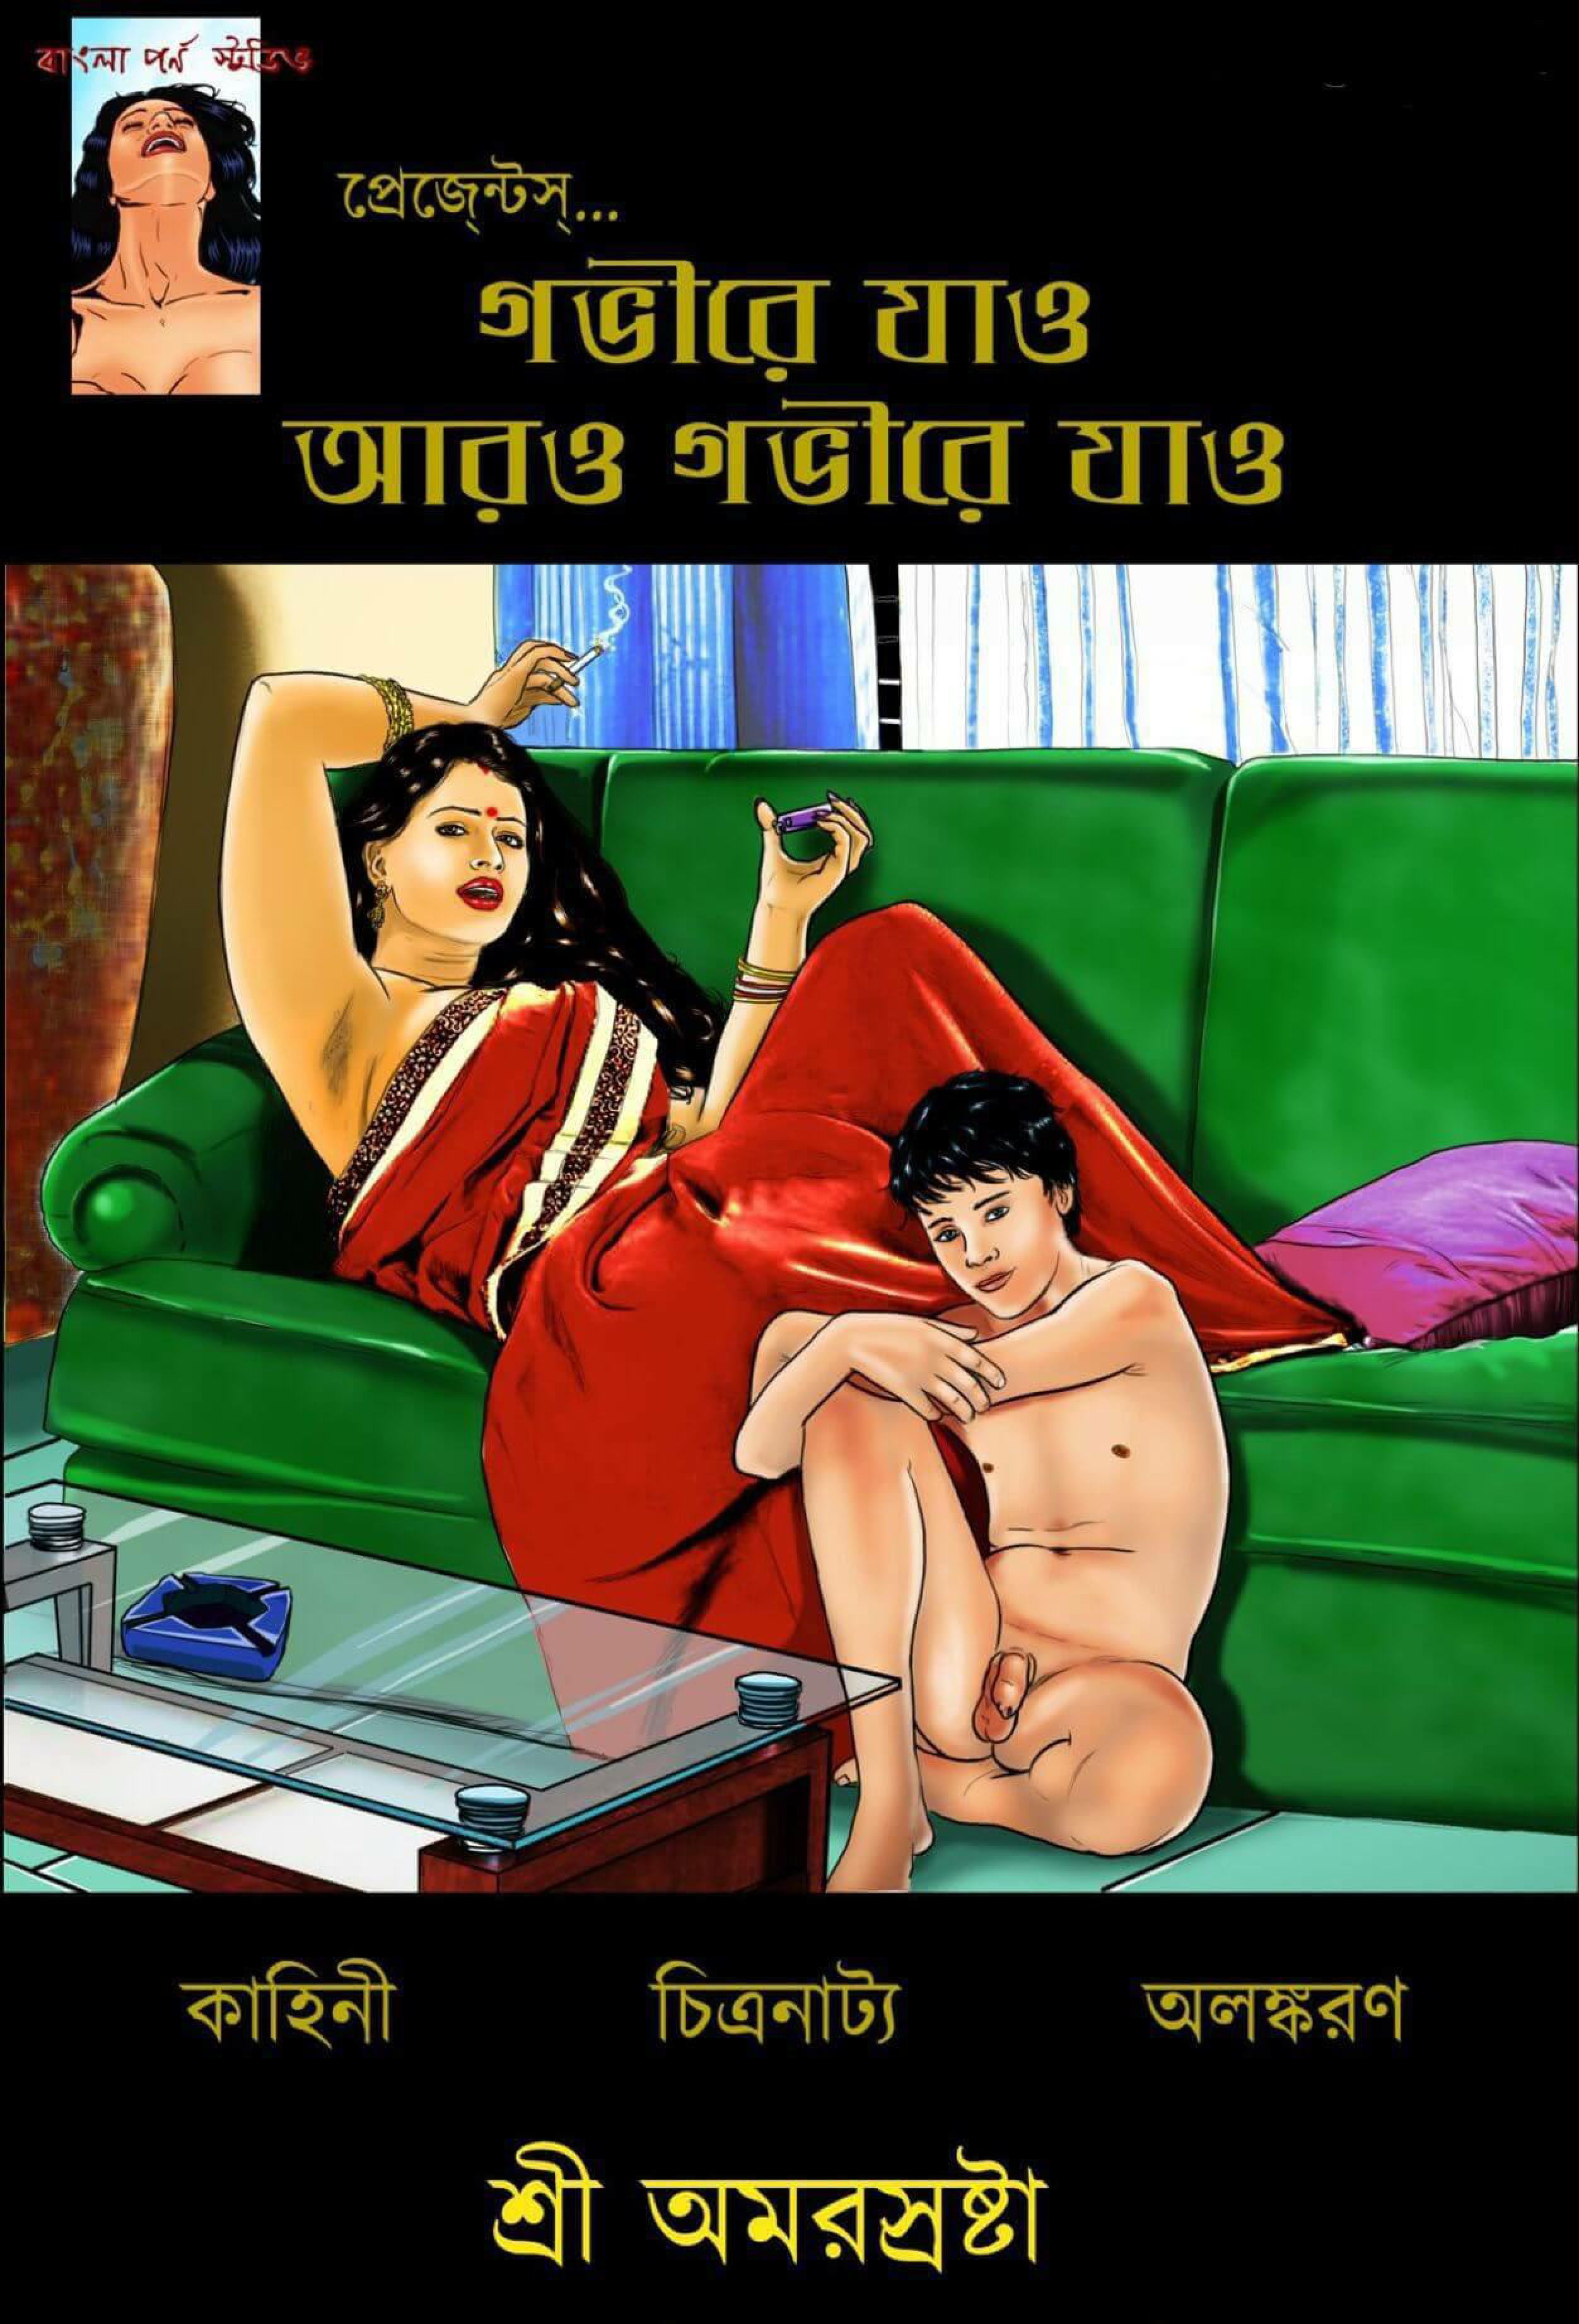 Porn comic bengali